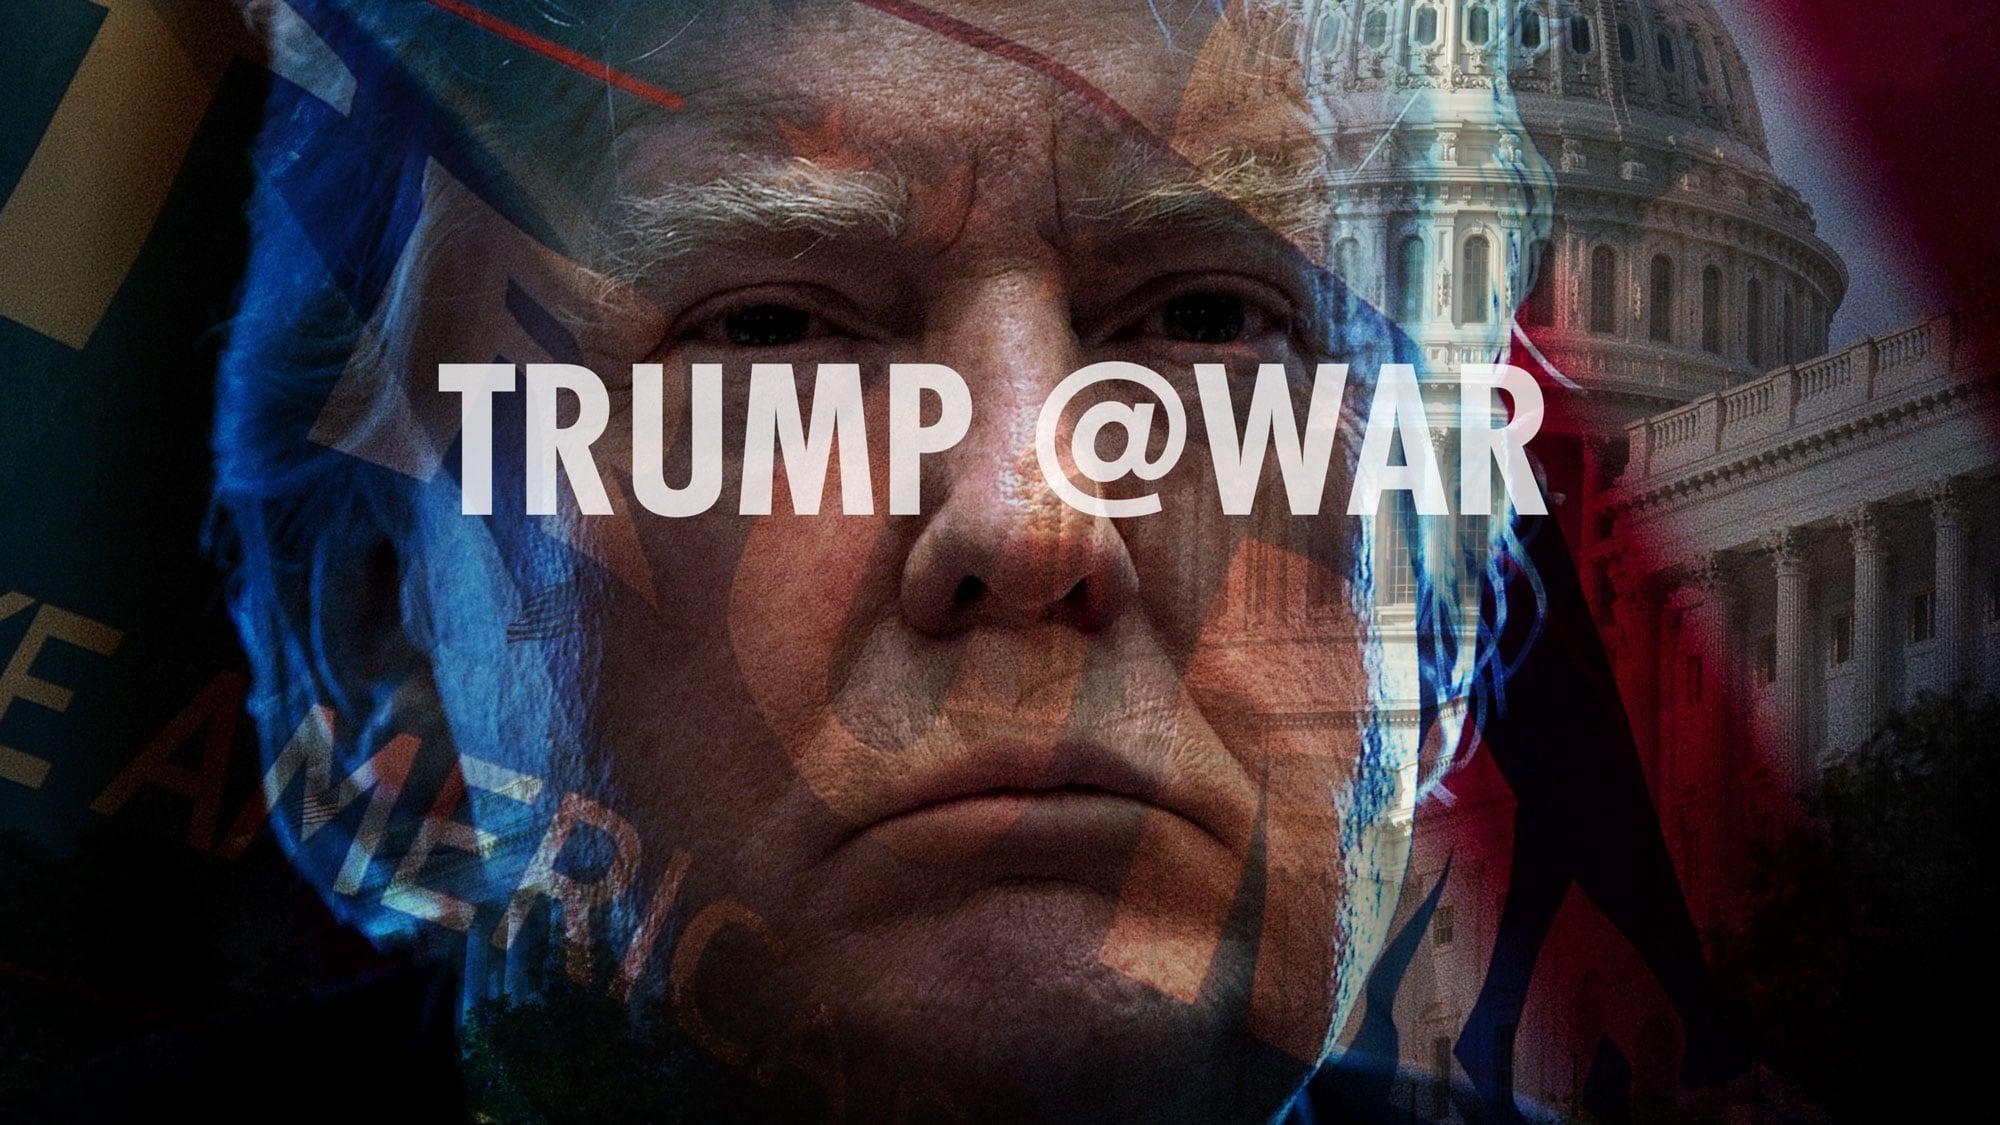 Trump @War backdrop